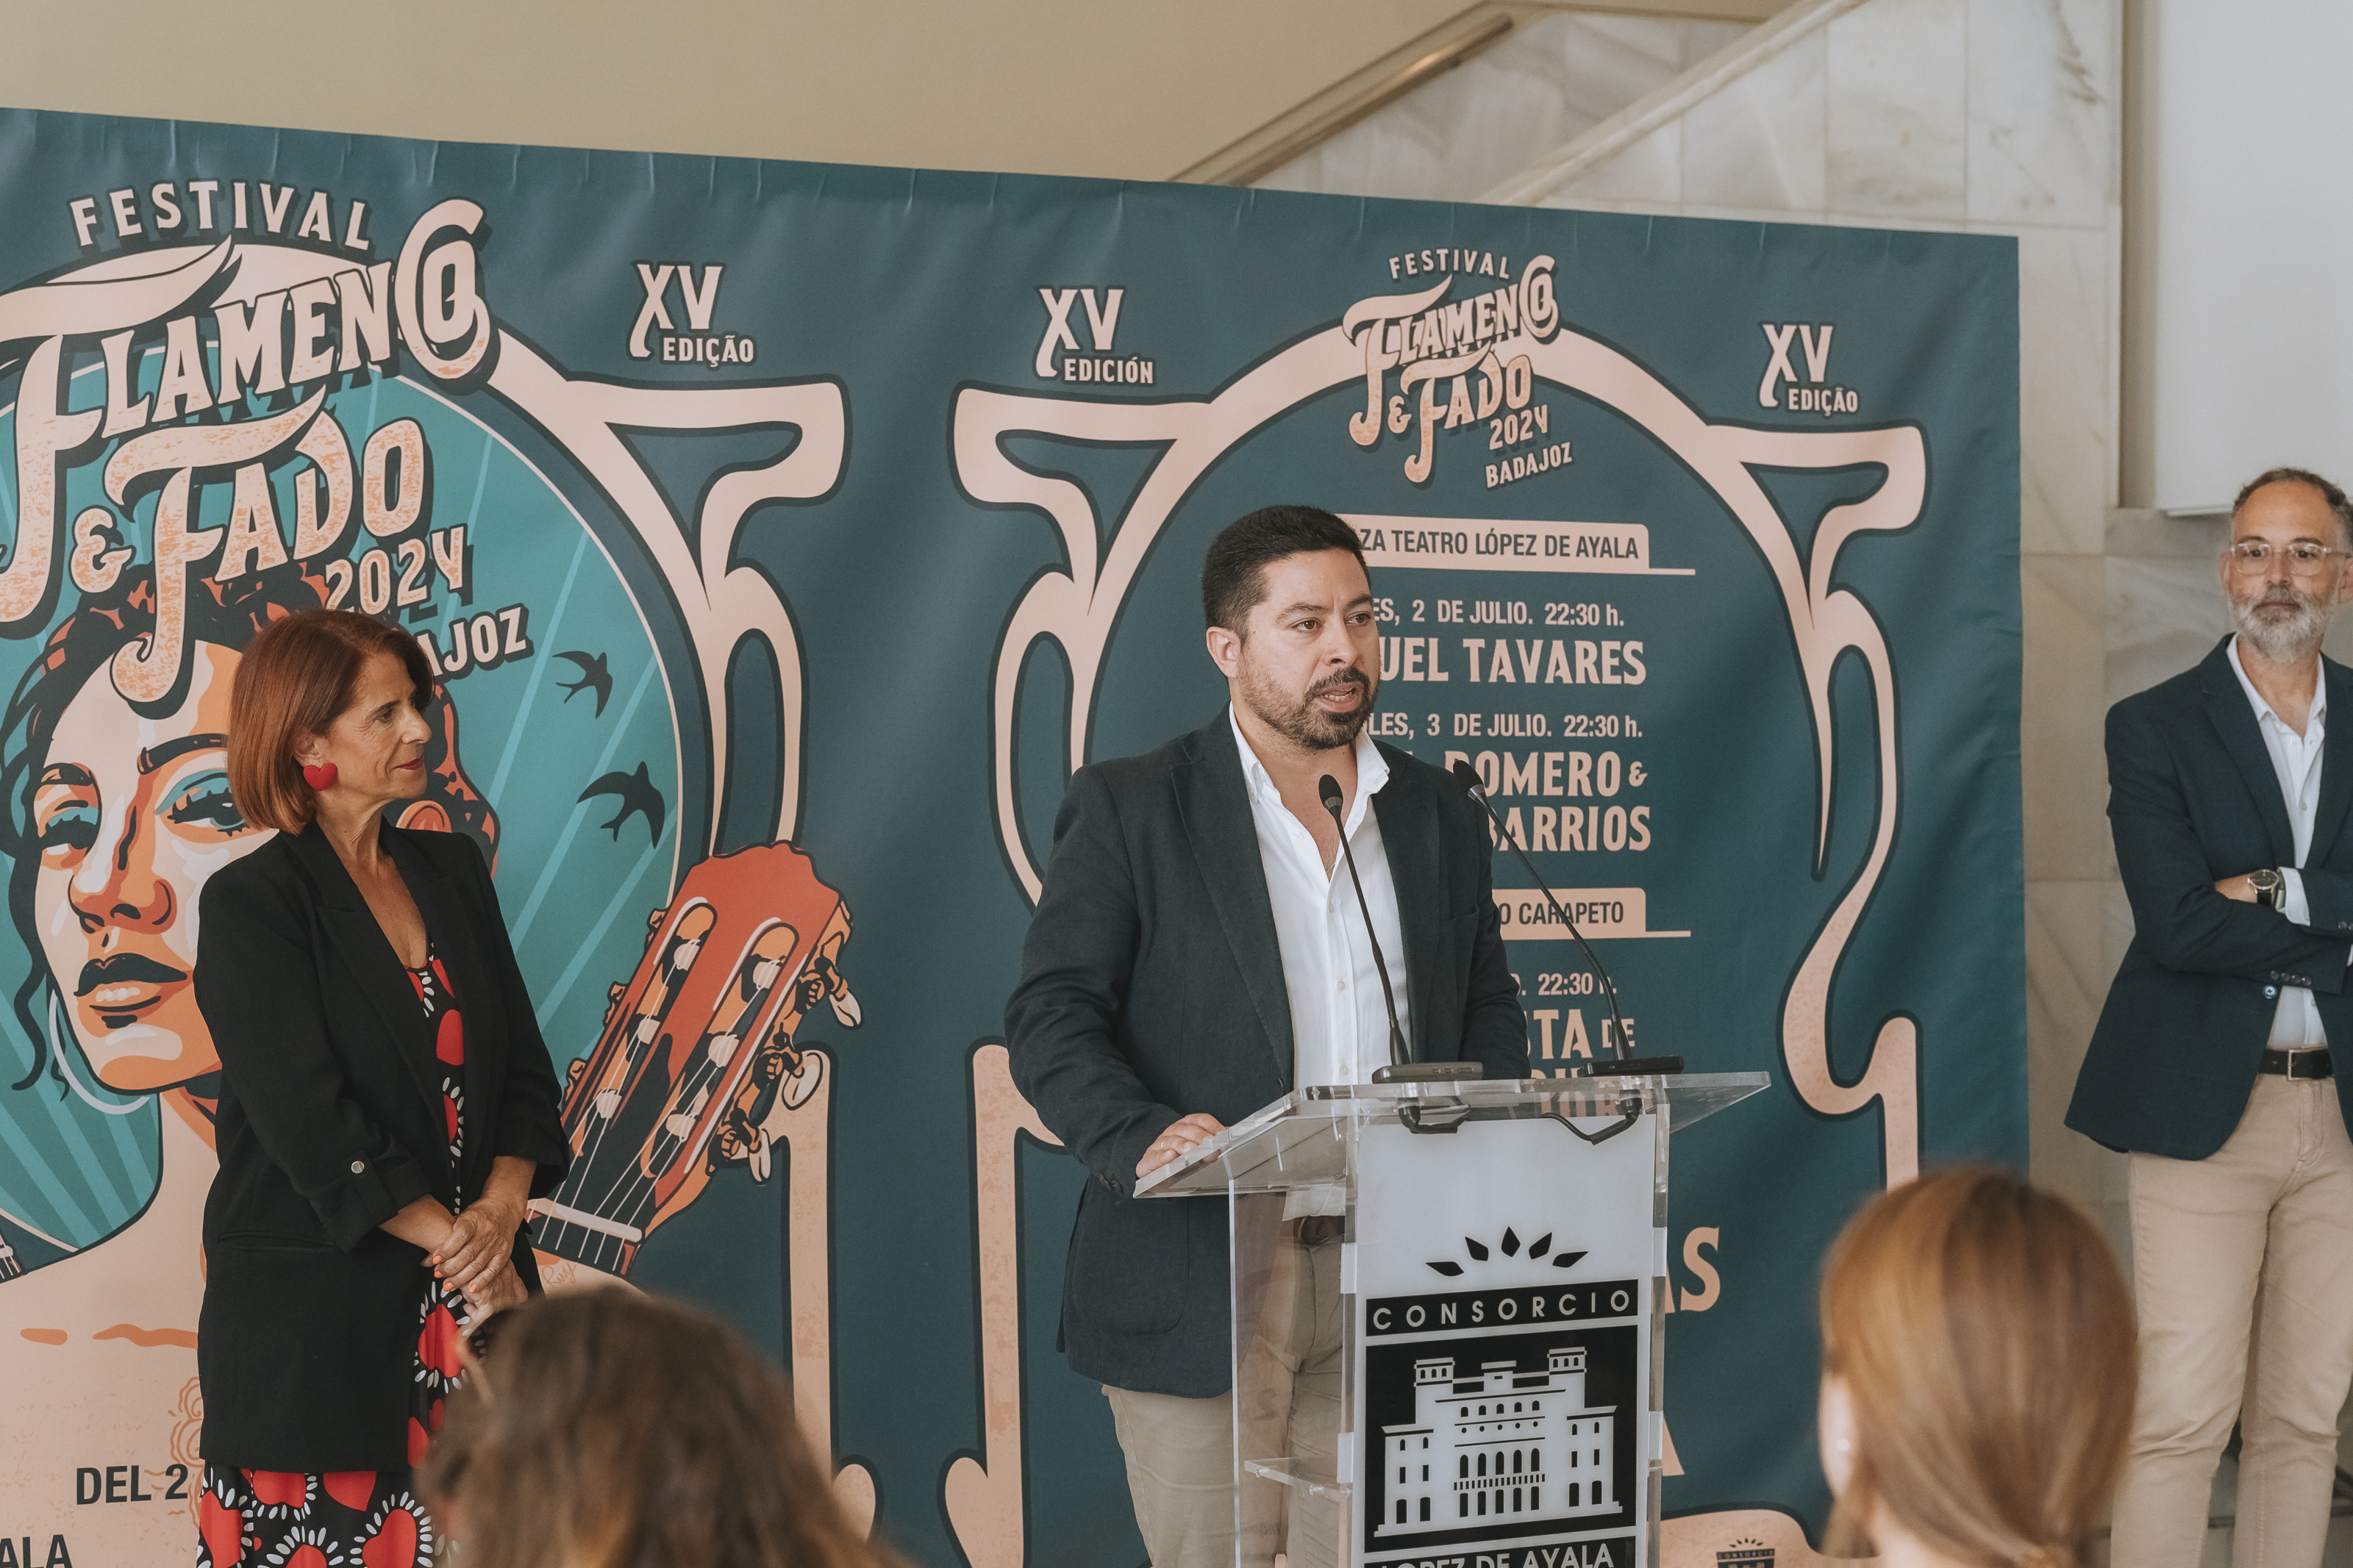 Image 2 of article Perrete y la Orquesta de Extremadura homenajean a Porrina de Badajoz en el XV Festival de Flamenco y Fado